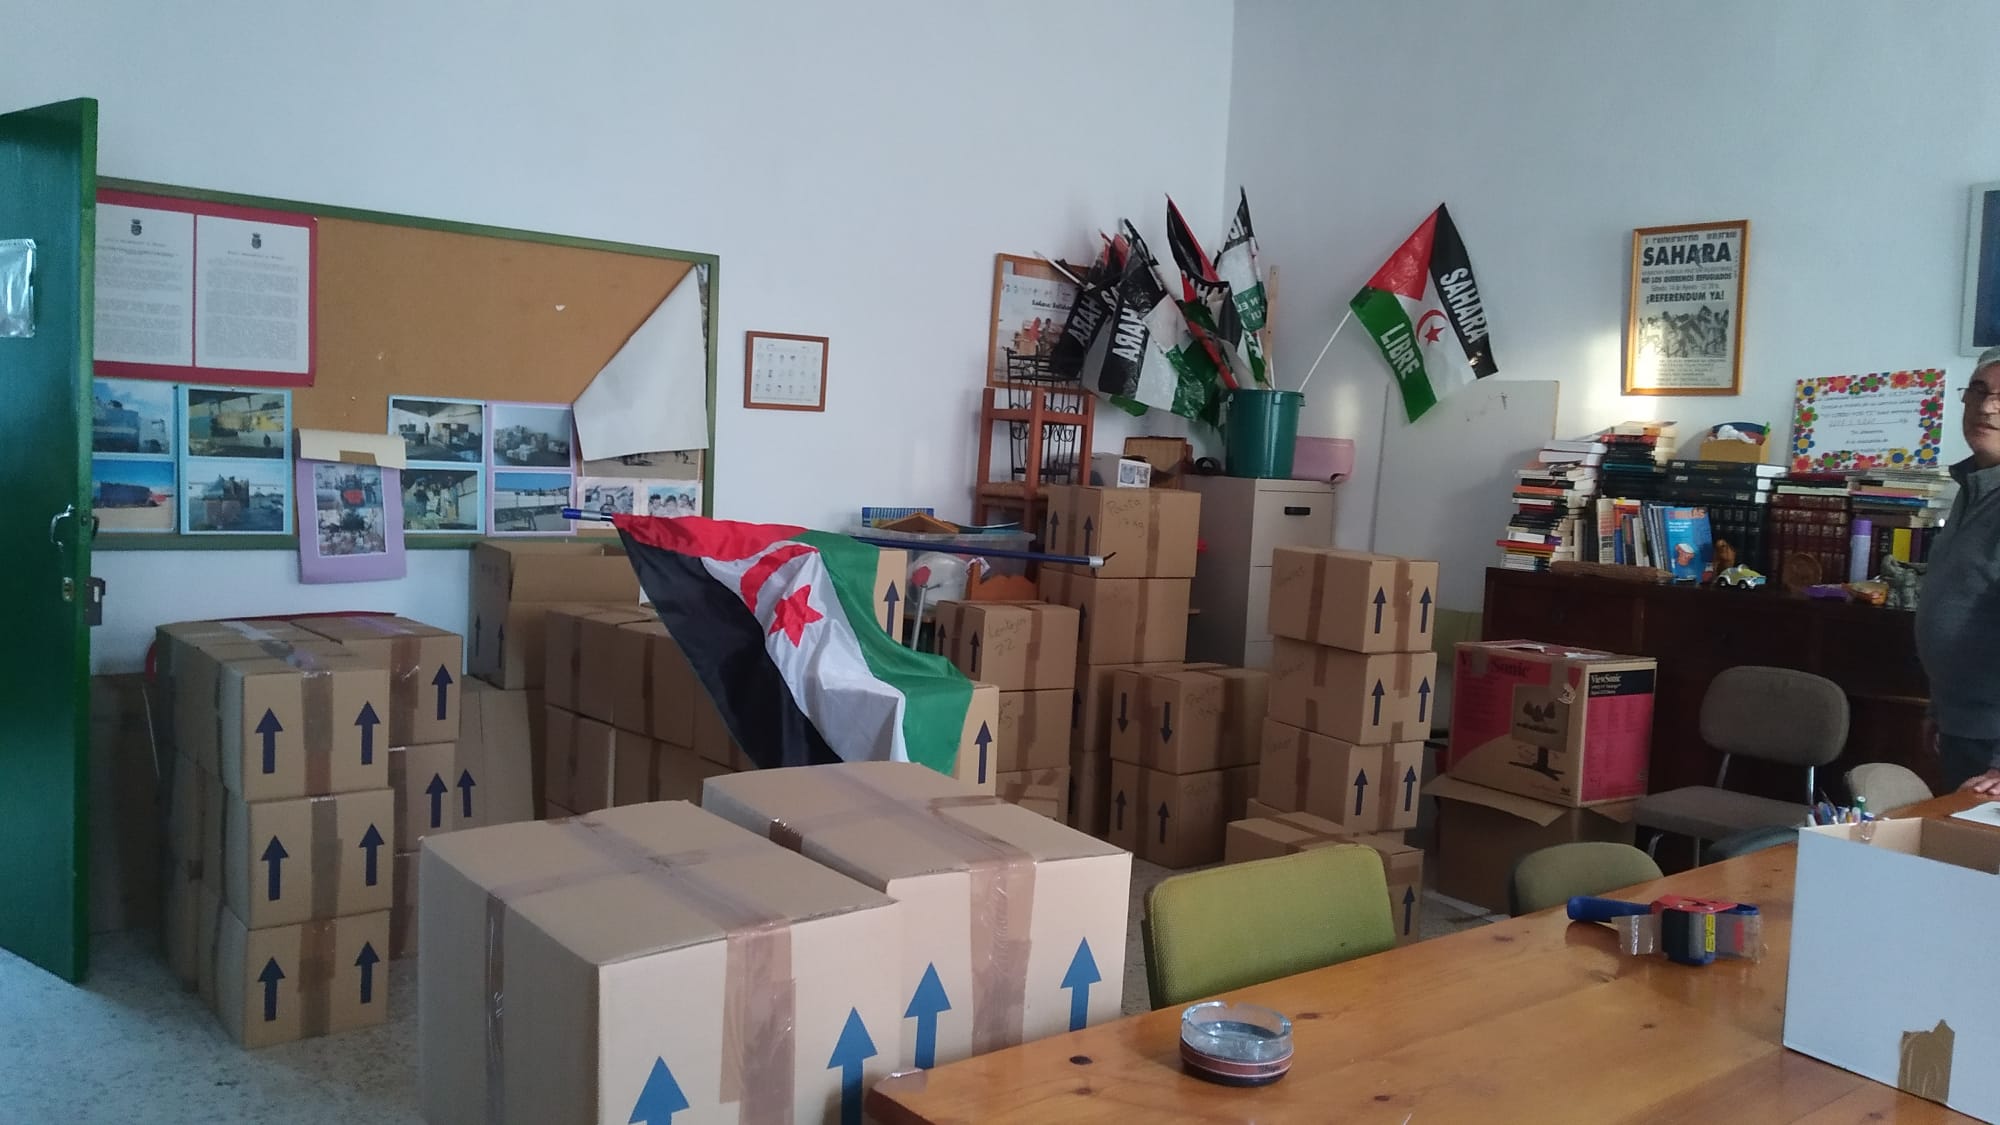 Ubrique da una muestra más de solidaridad con el pueblo saharaui